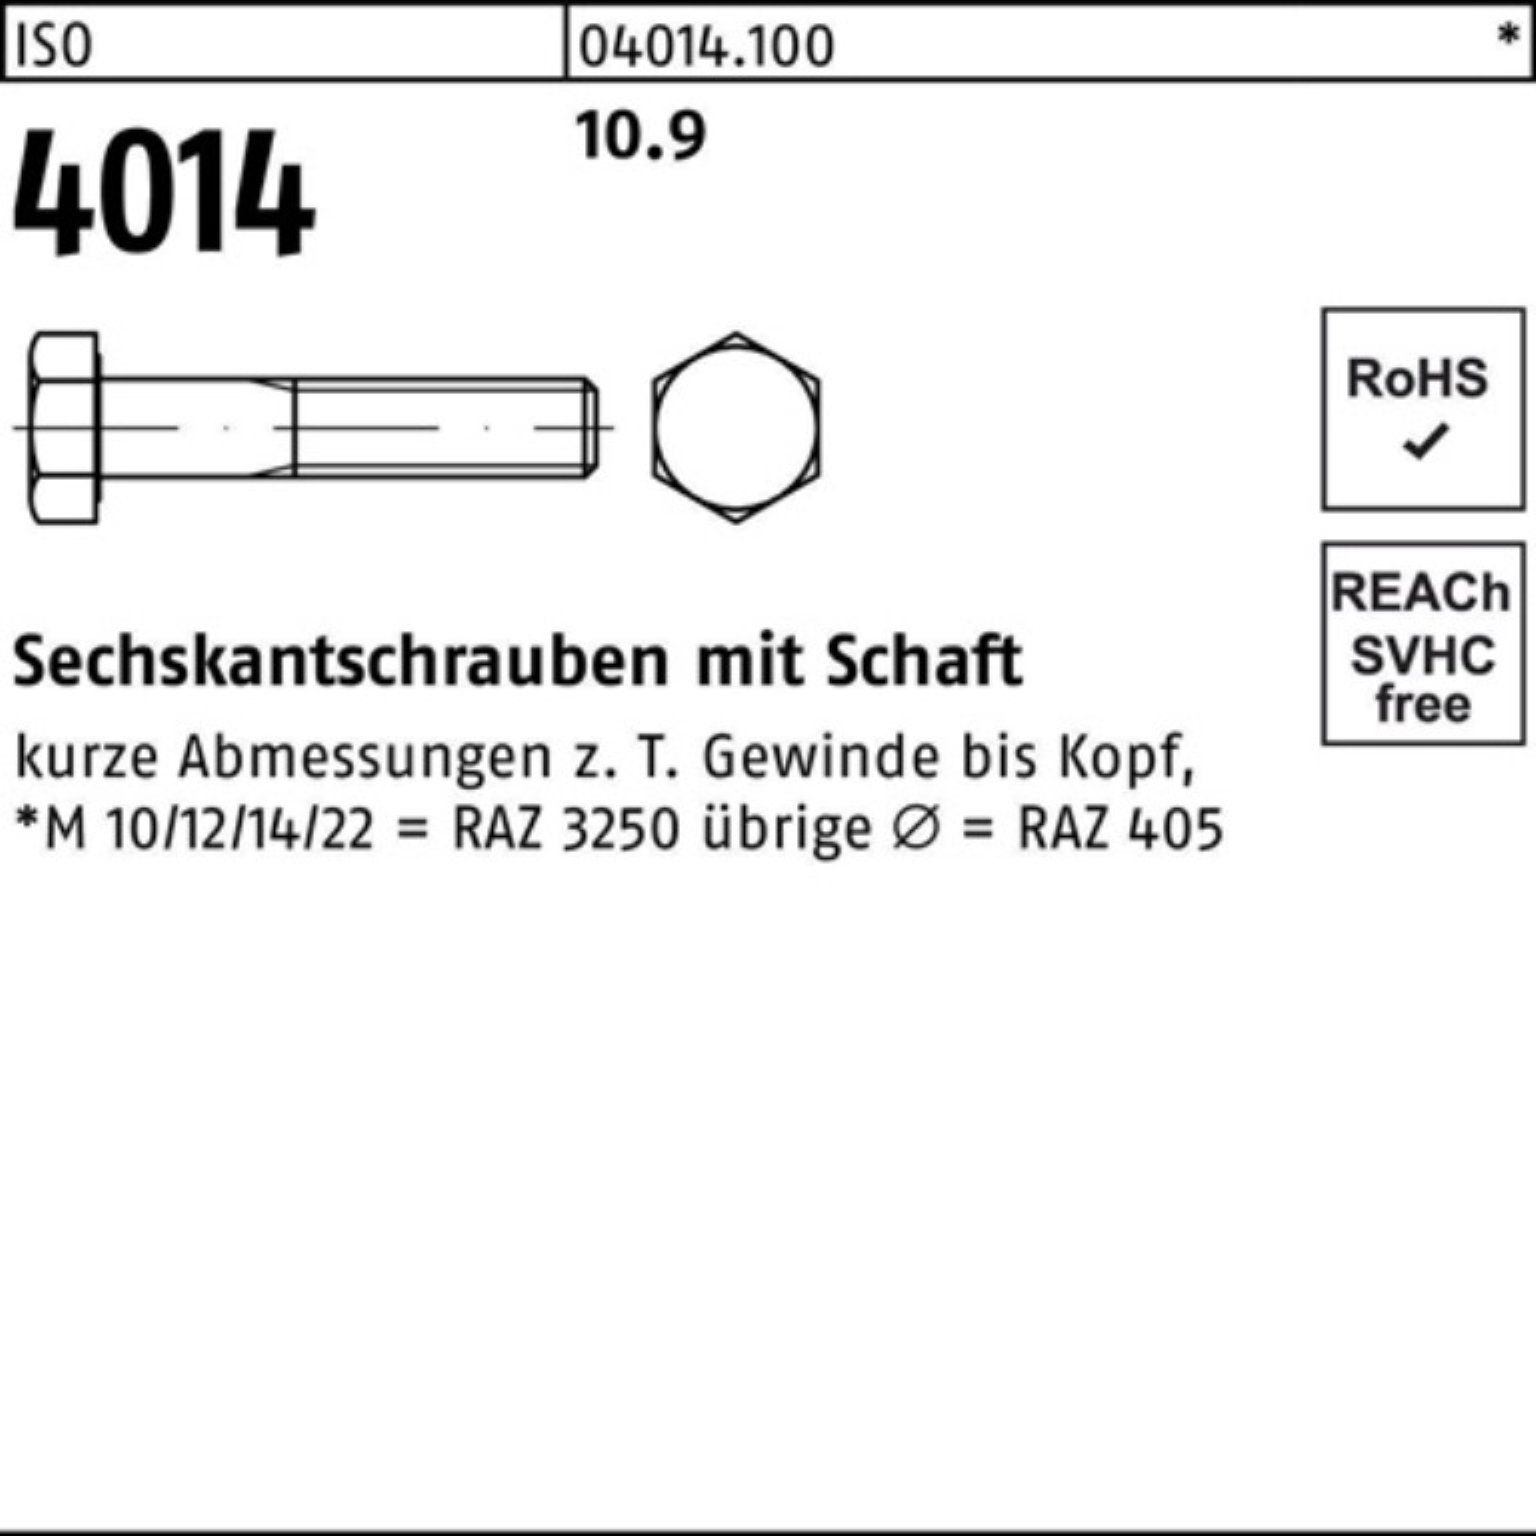 Bufab Sechskantschraube 100er Pack Sechskantschraube 1 M18x 4014 10.9 300 ISO Schaft IS Stück